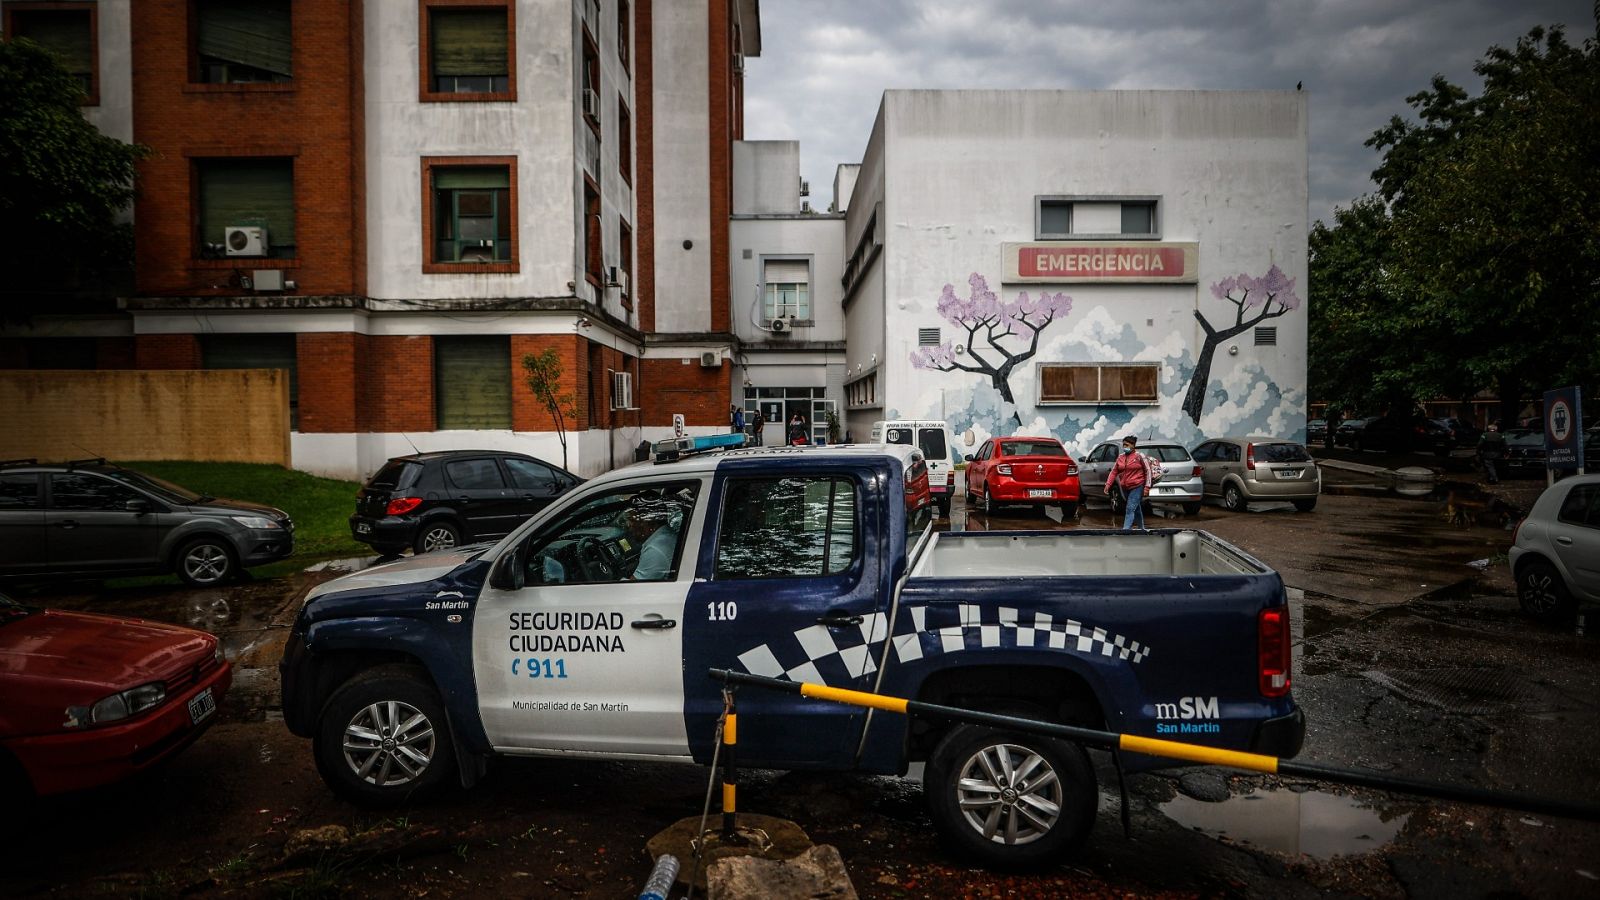 Una patrulla de policía custodia el hospital de agudos Eva Peron en Buenos Aires